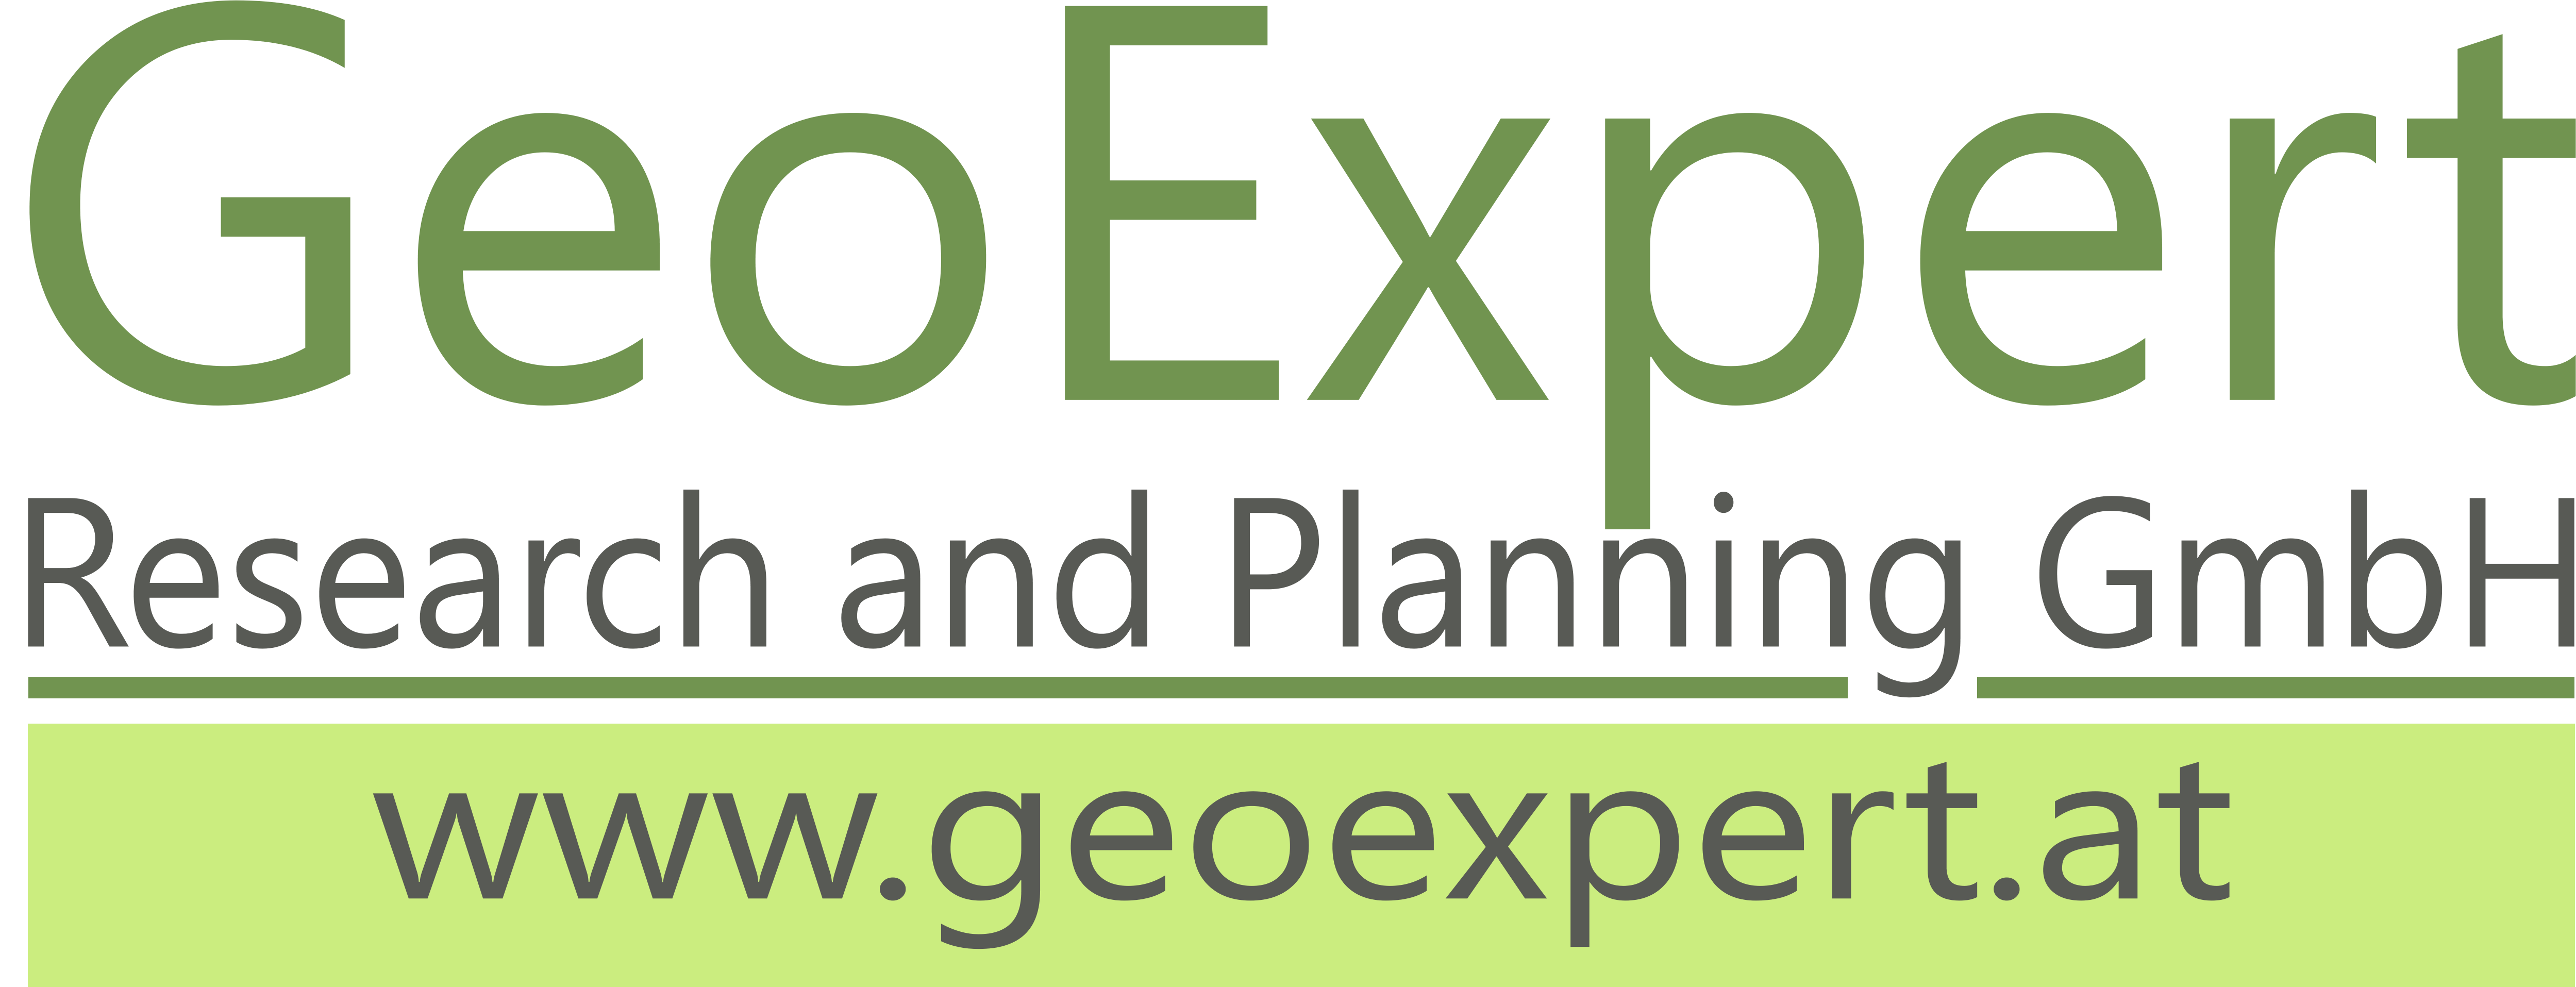 GeoExpert20180130